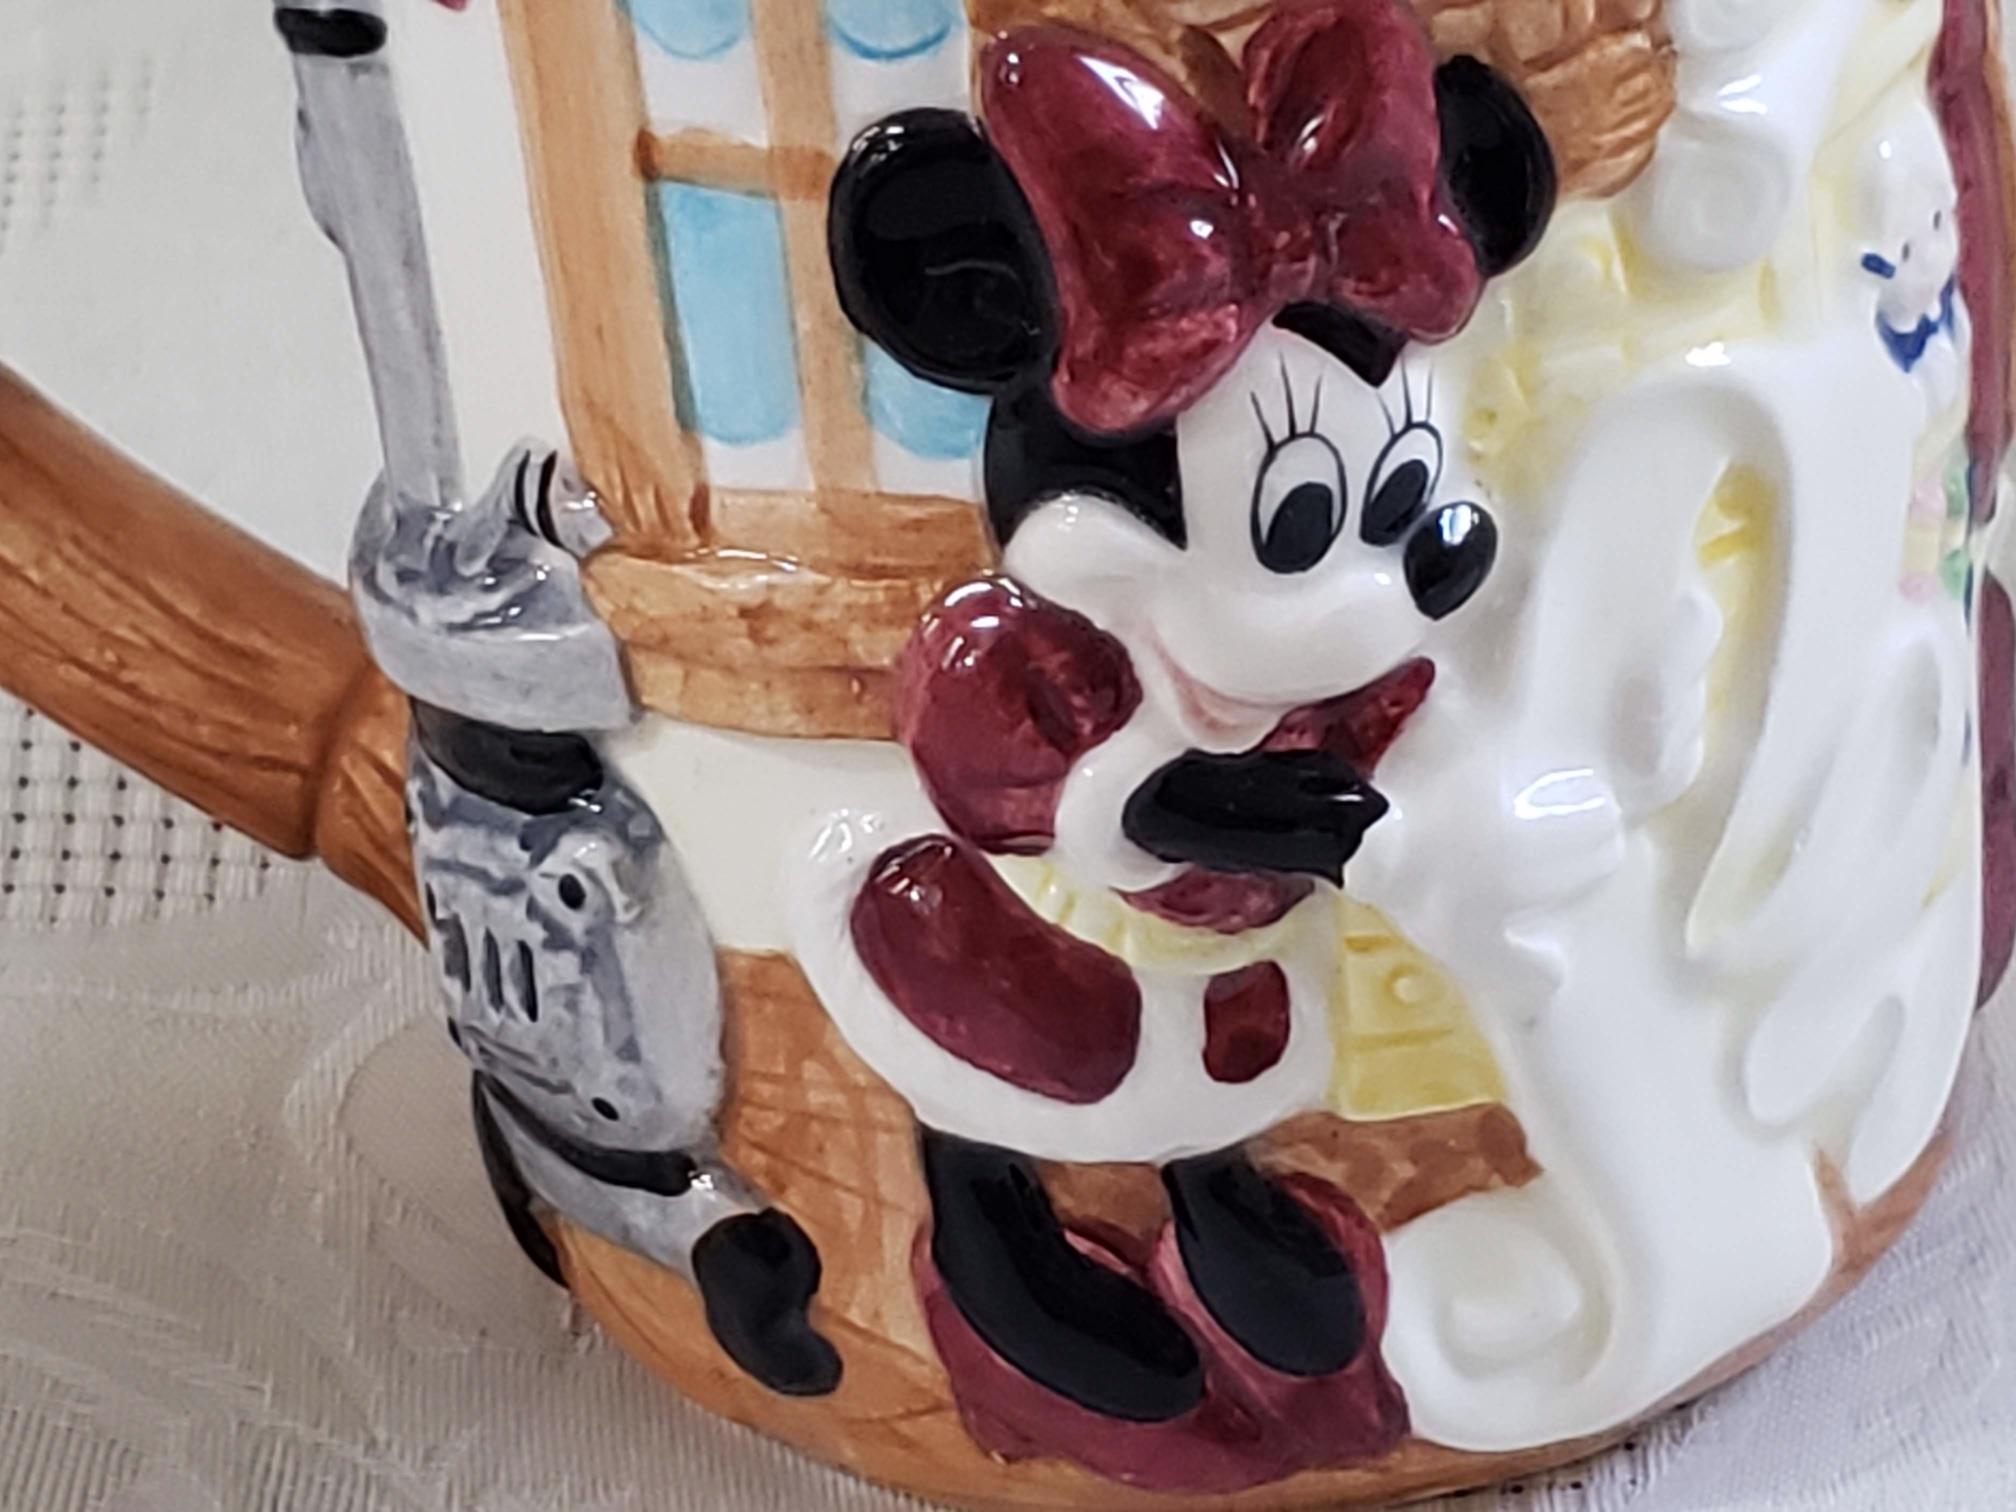 Mickey Cupcake Mug by Disney